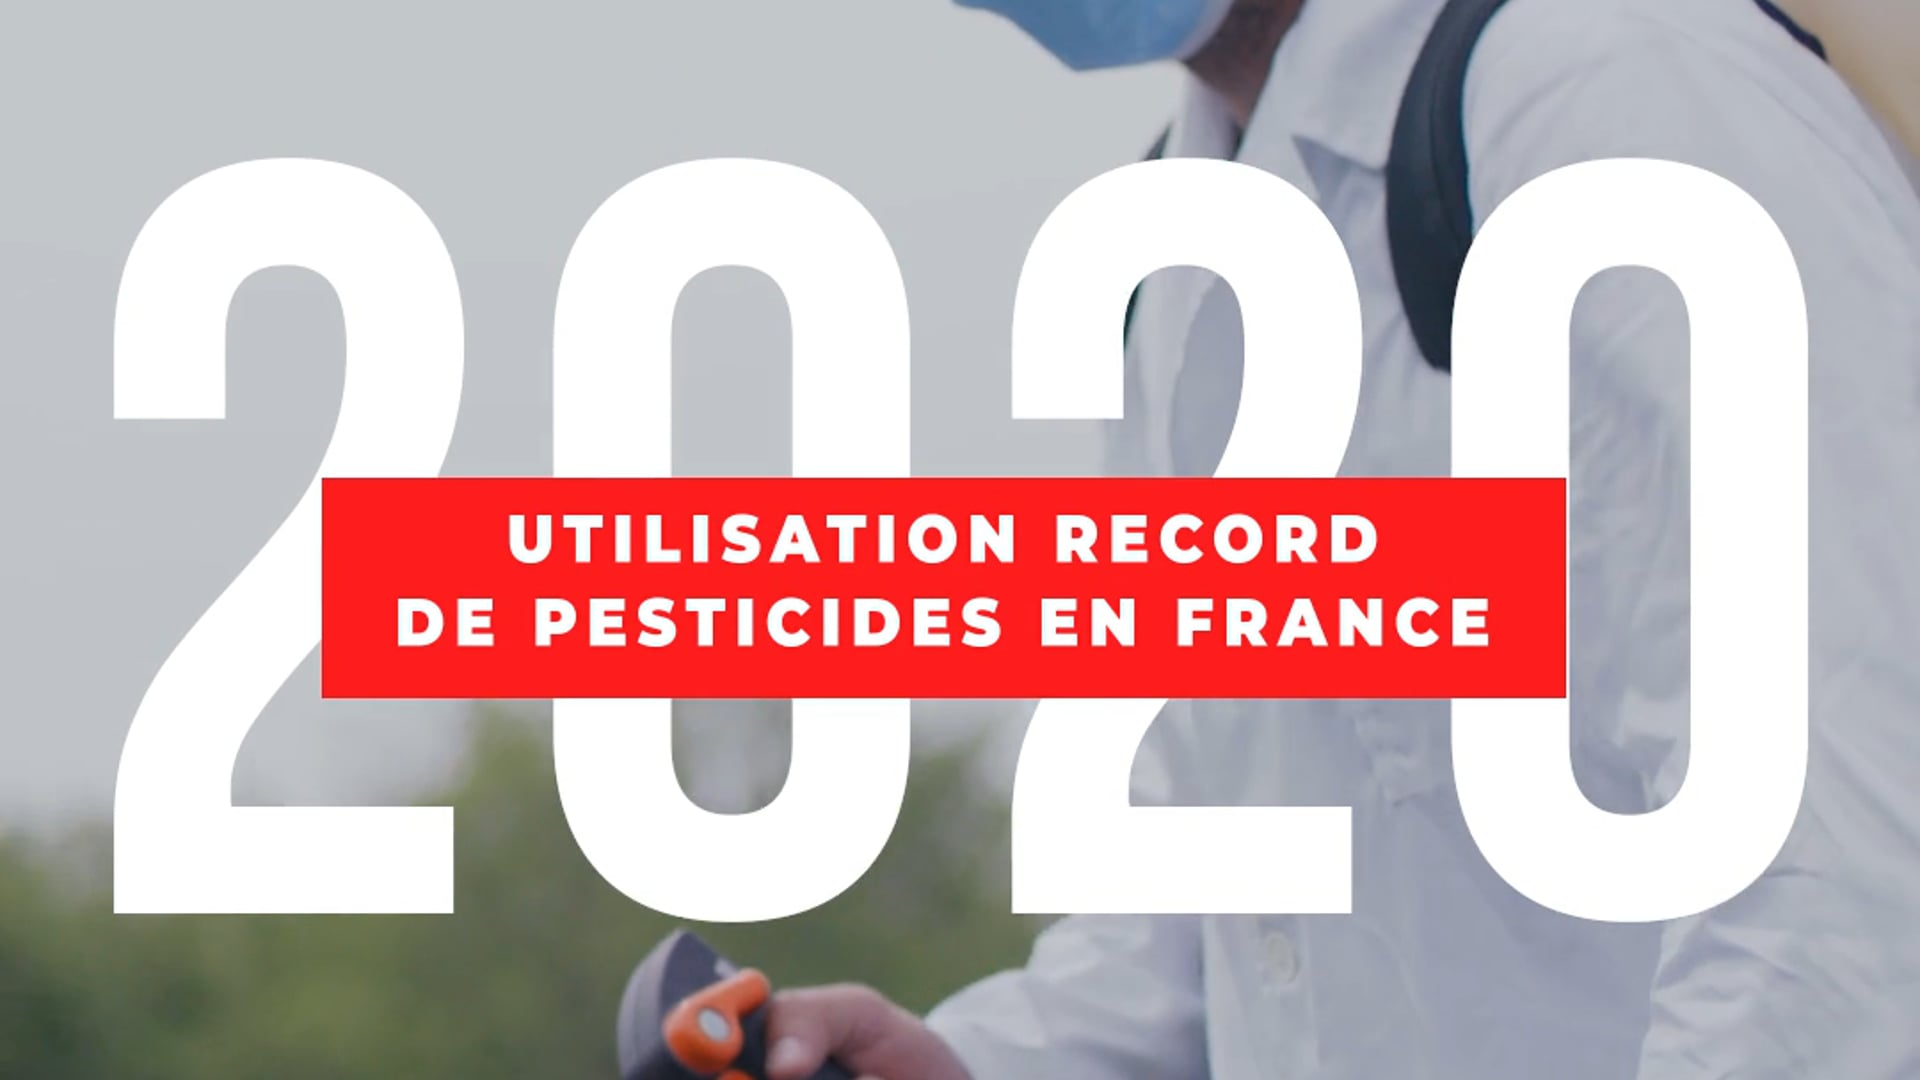 Pesticides en France